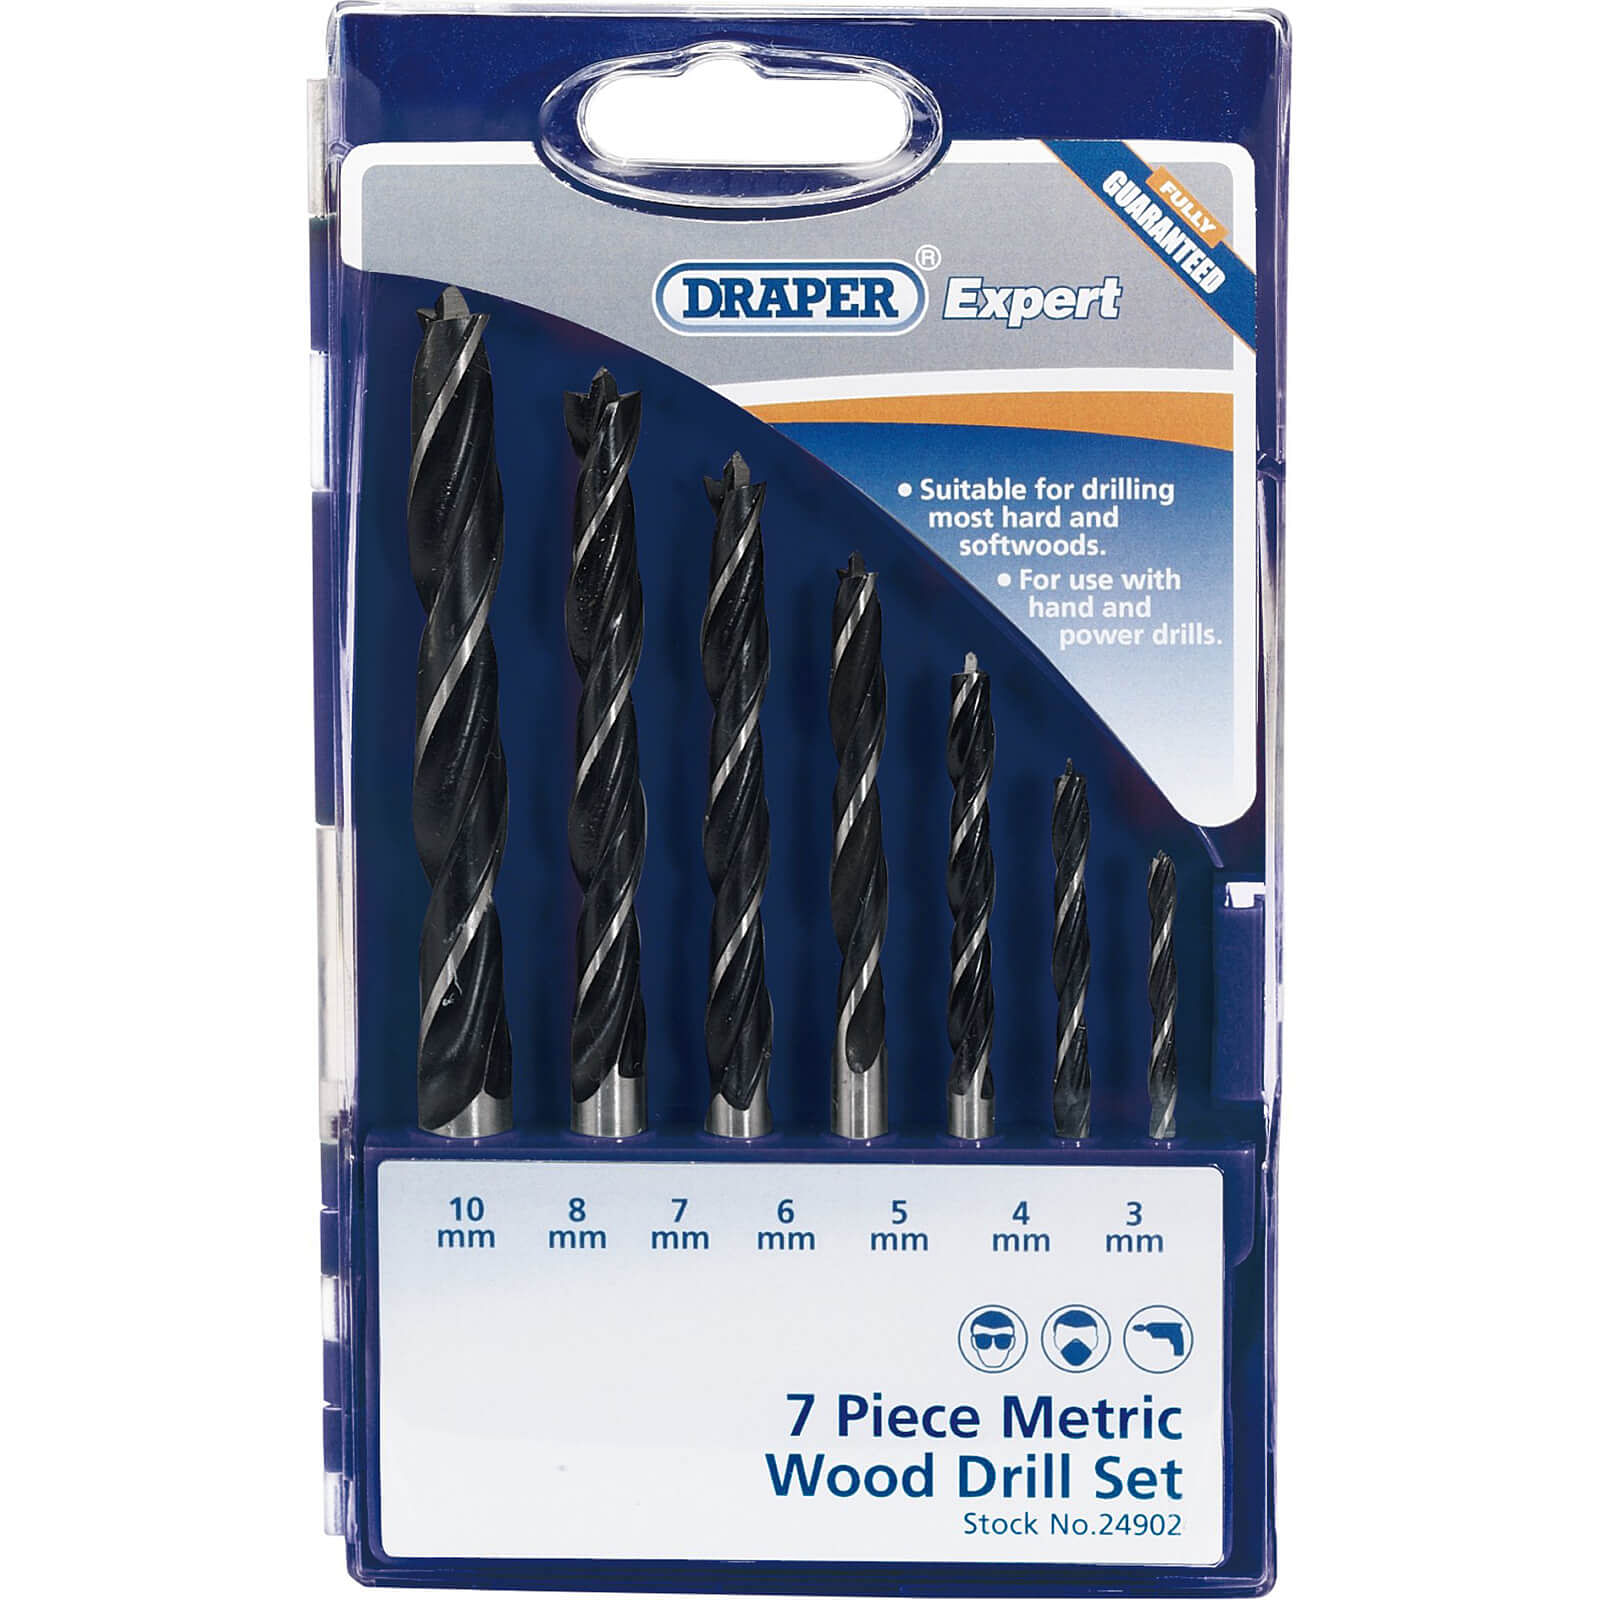 Draper Wood Drill Bit Pack of 2 4mm 